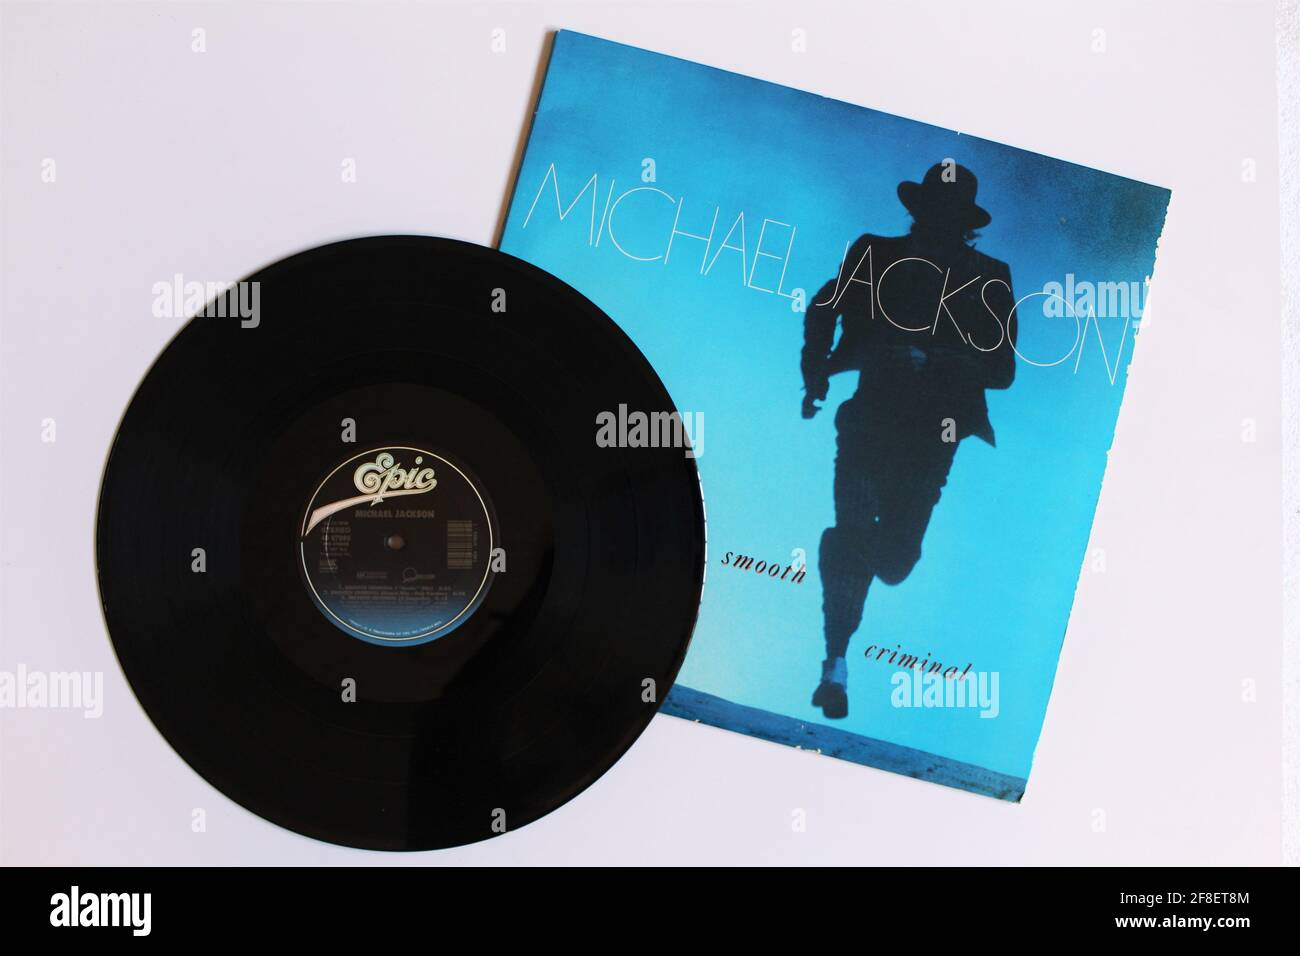 Pop, disco, rock y funk artista, Michael Jackson álbum de música en disco LP de vinilo. Título: Smooth Criminal álbum de portada Foto de stock